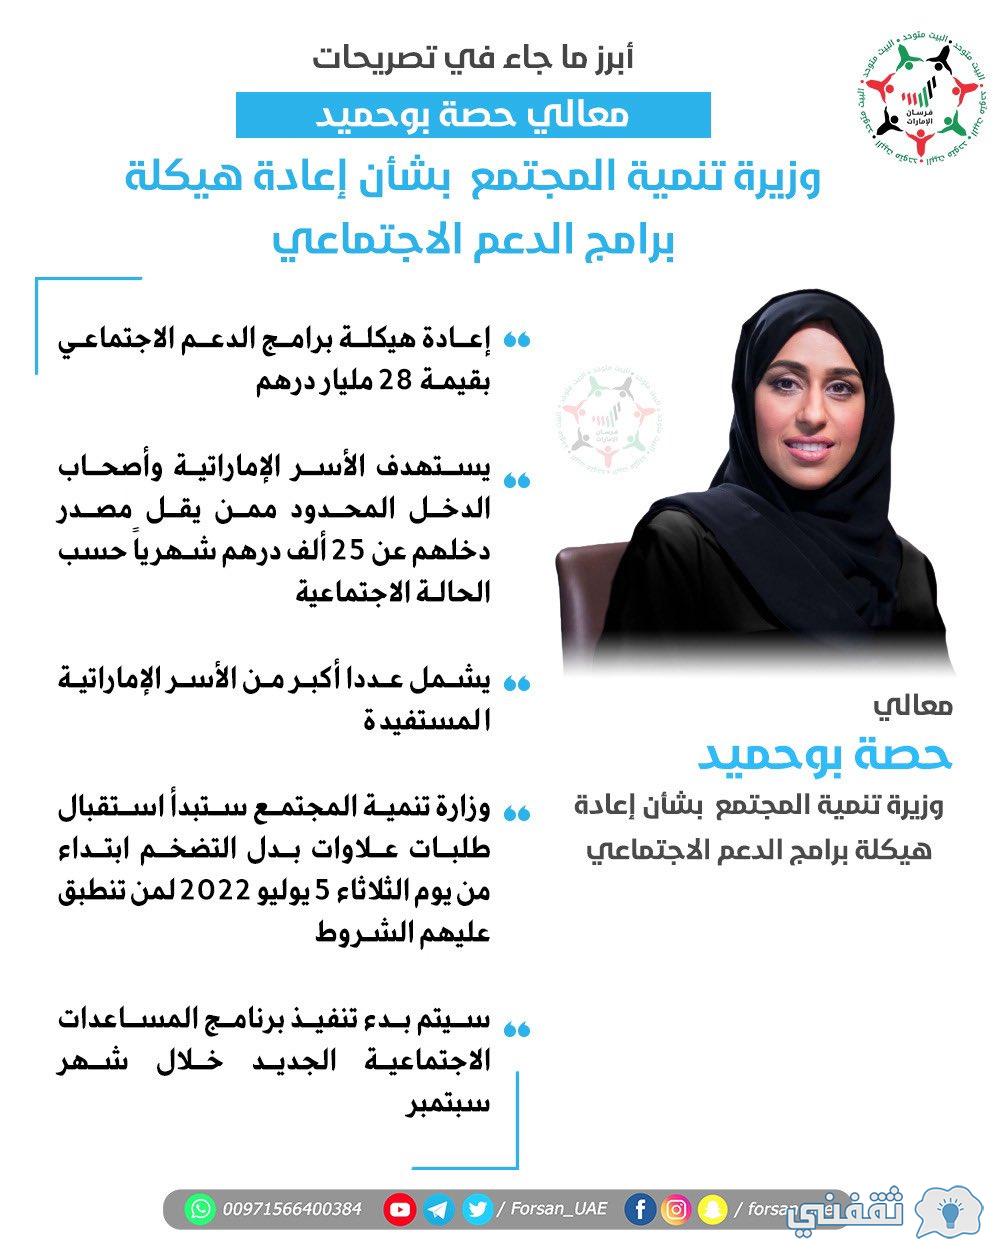 mocd.gov.ae مكرمة حاكم الإمارات 2022 تسجيل بدل تضخم وزارة تنمية المجتمع UAE بالهوية